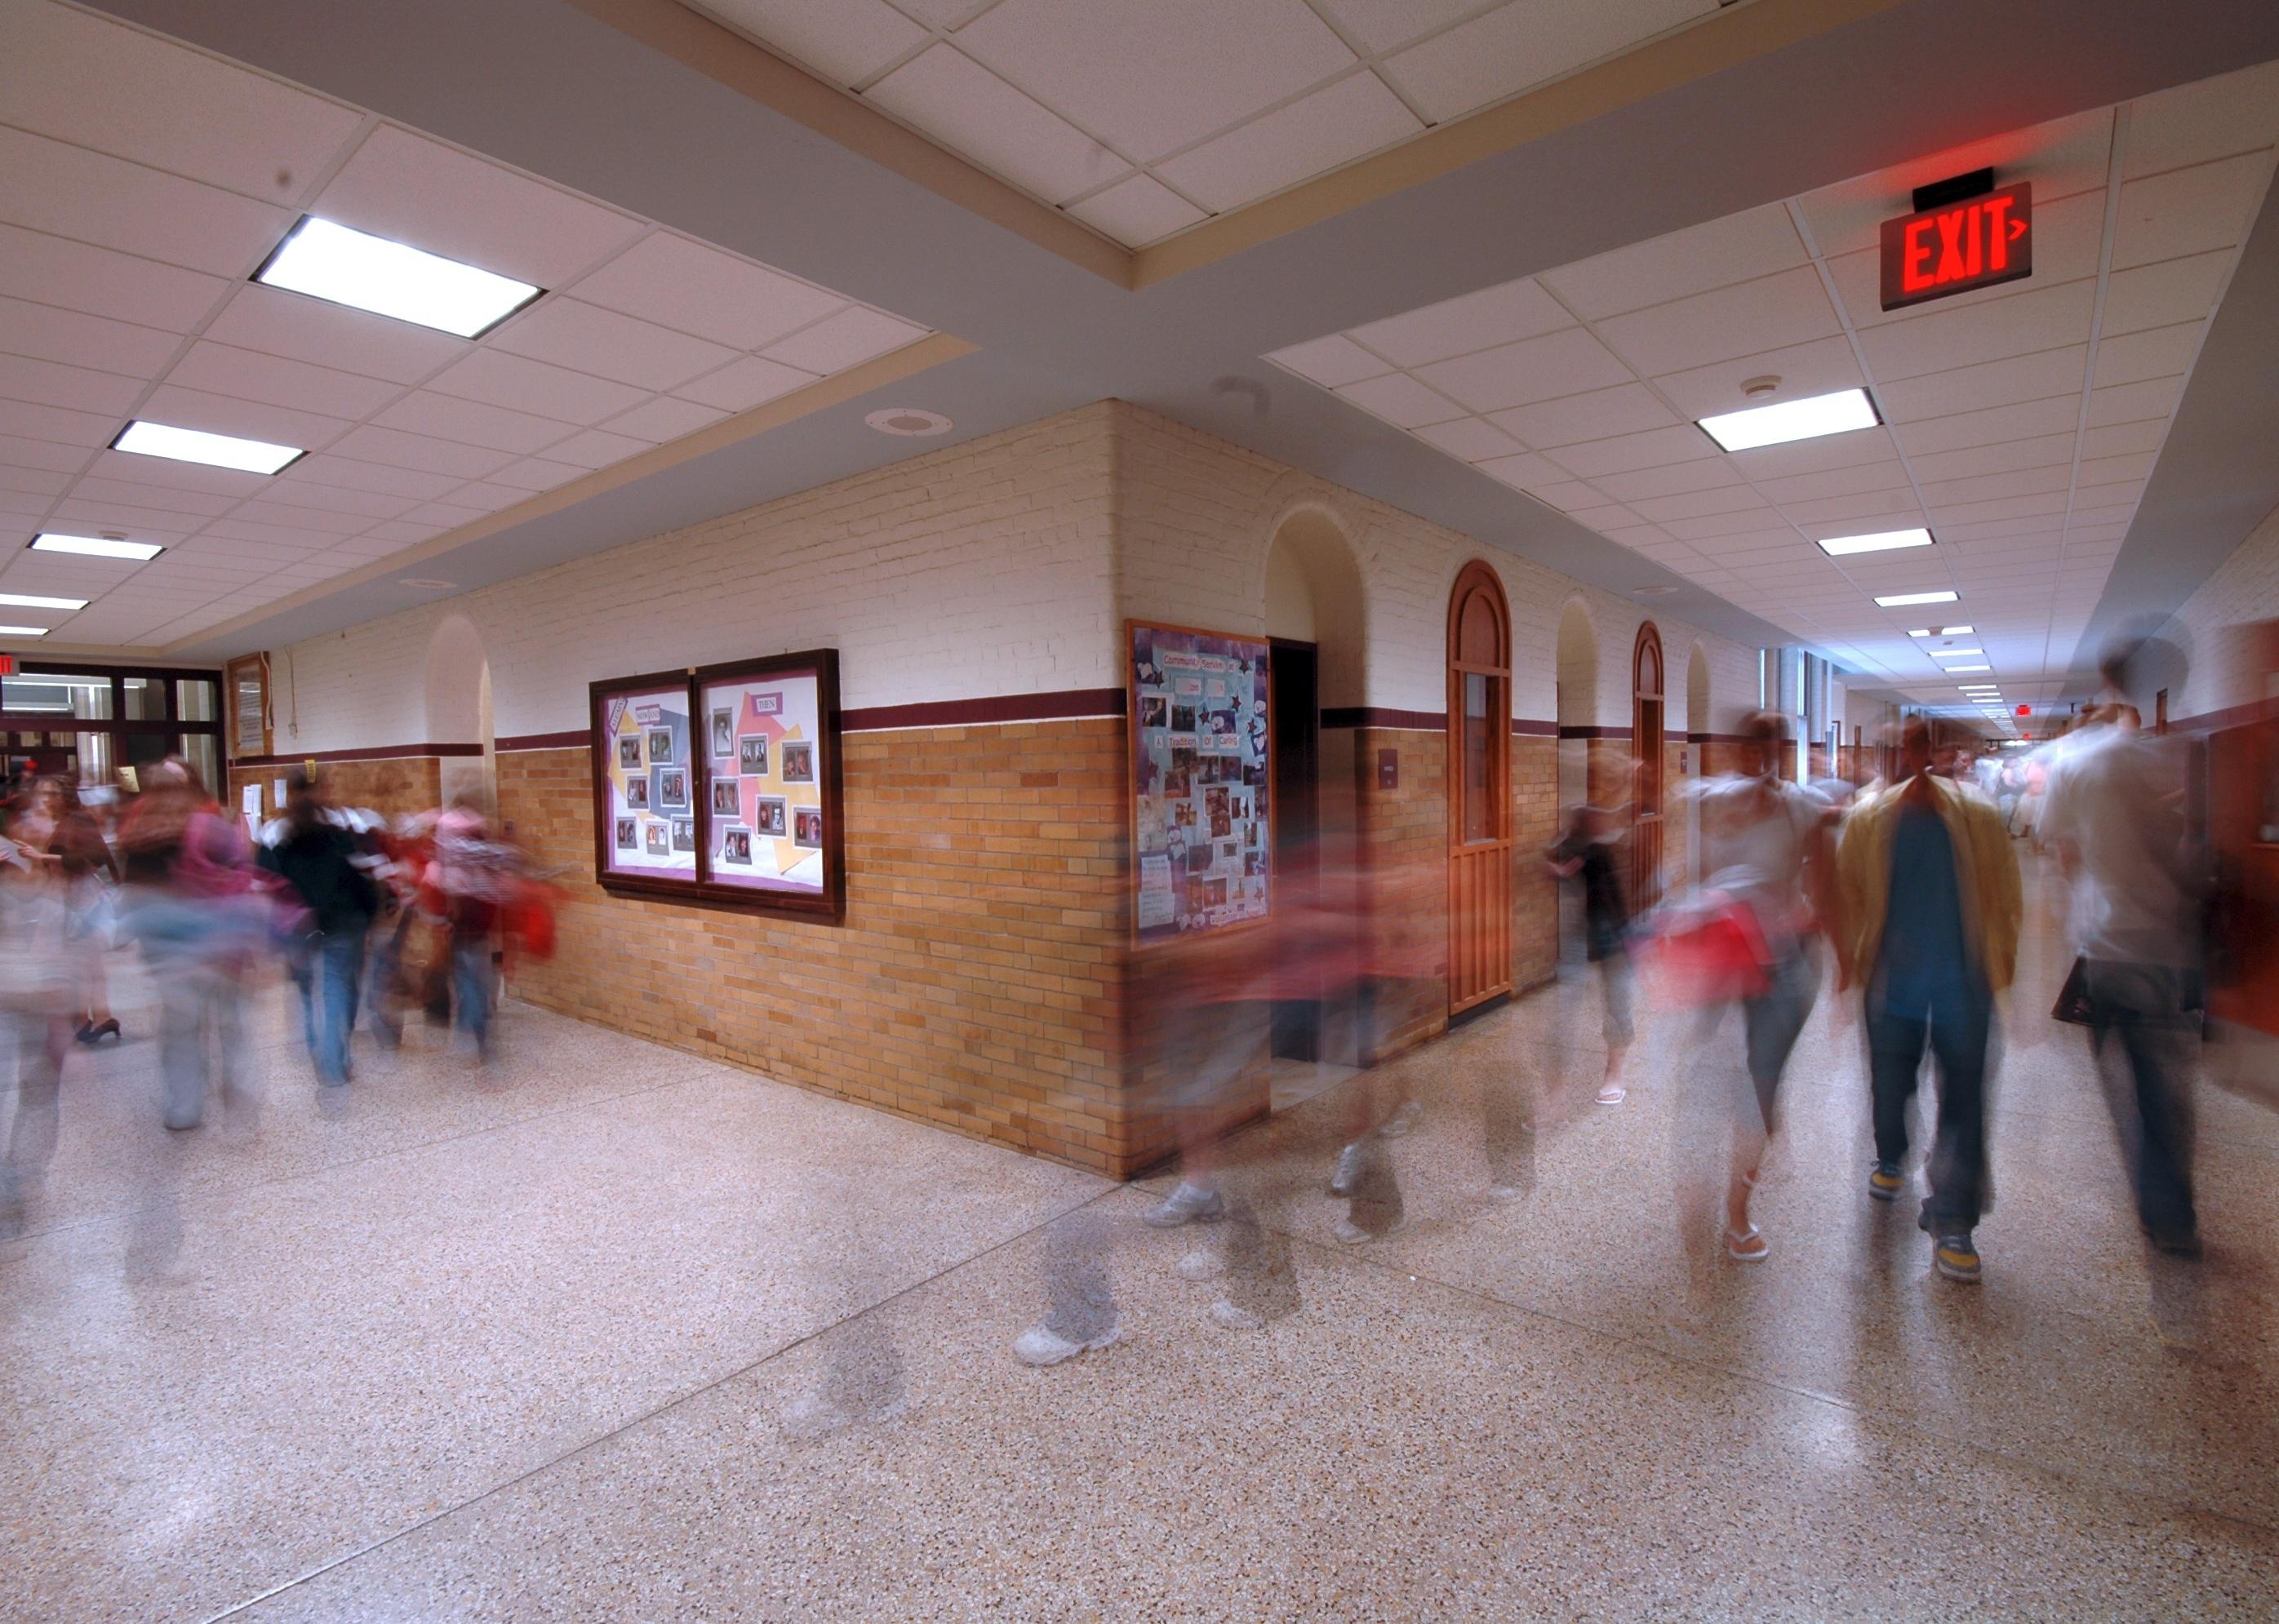 Busy high school hallway